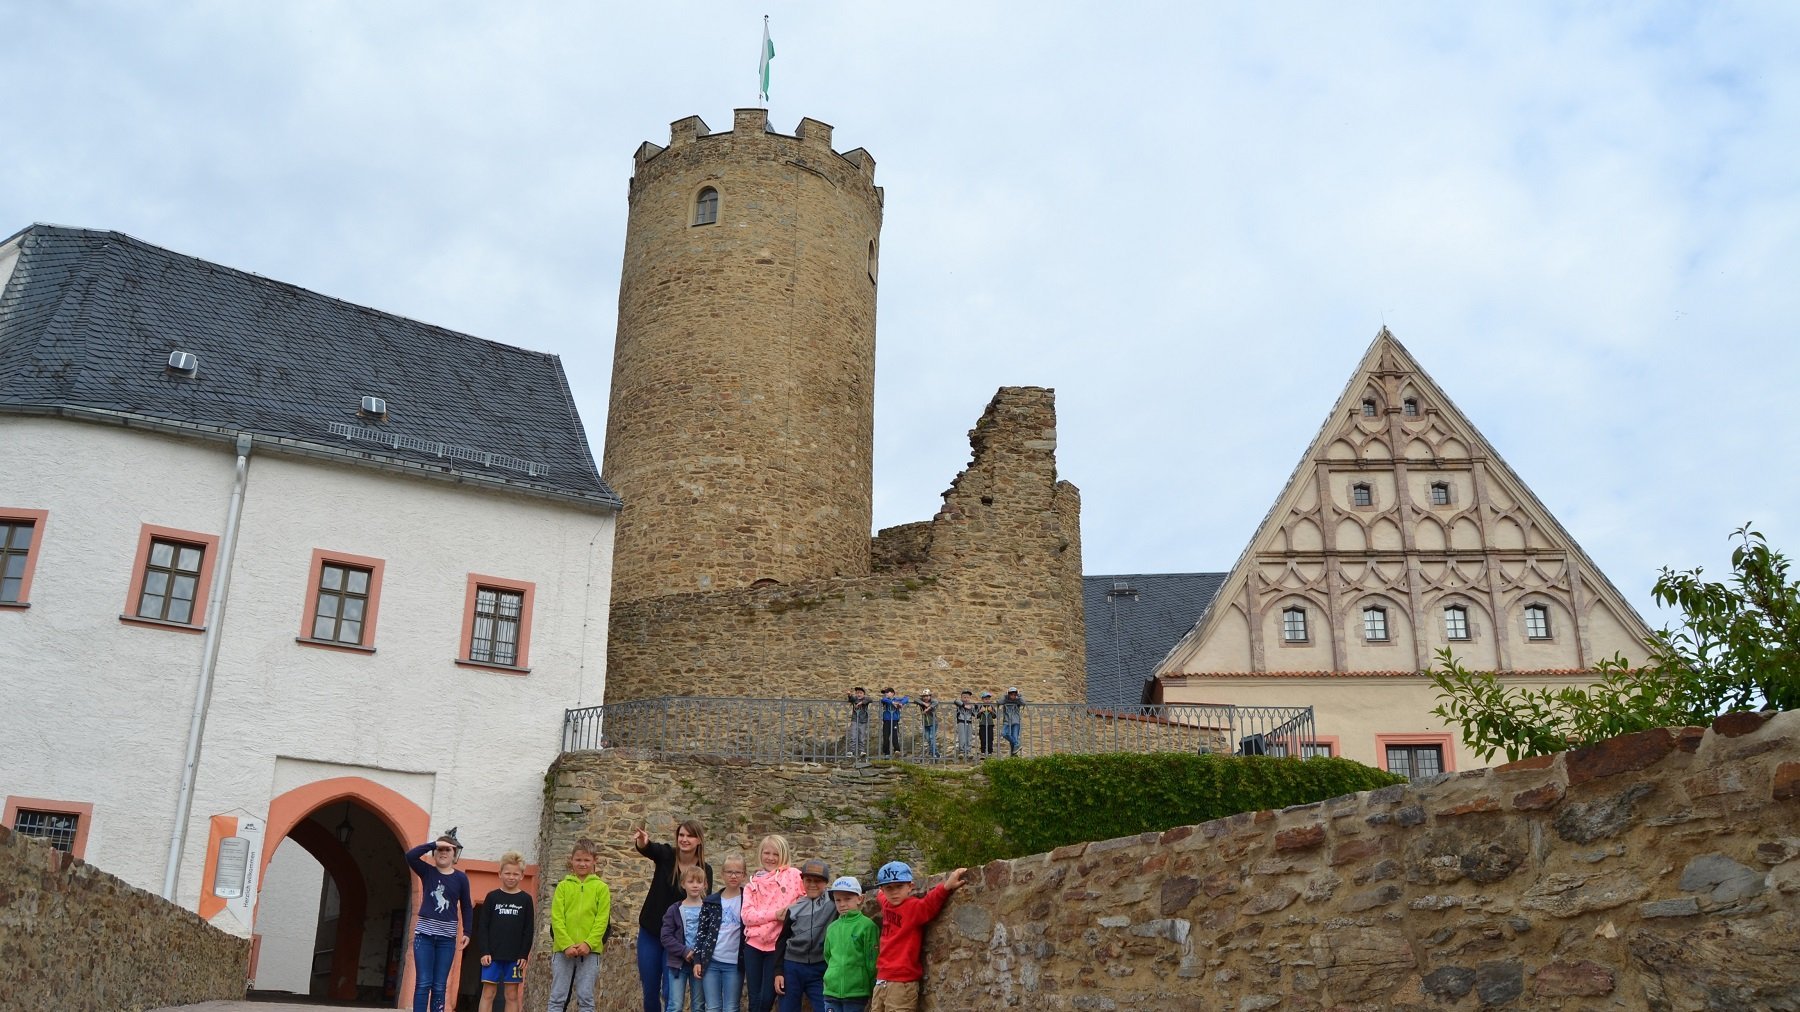 Kindergruppe vor Burg Scharfenstein entdecken gemeinsam die Burg